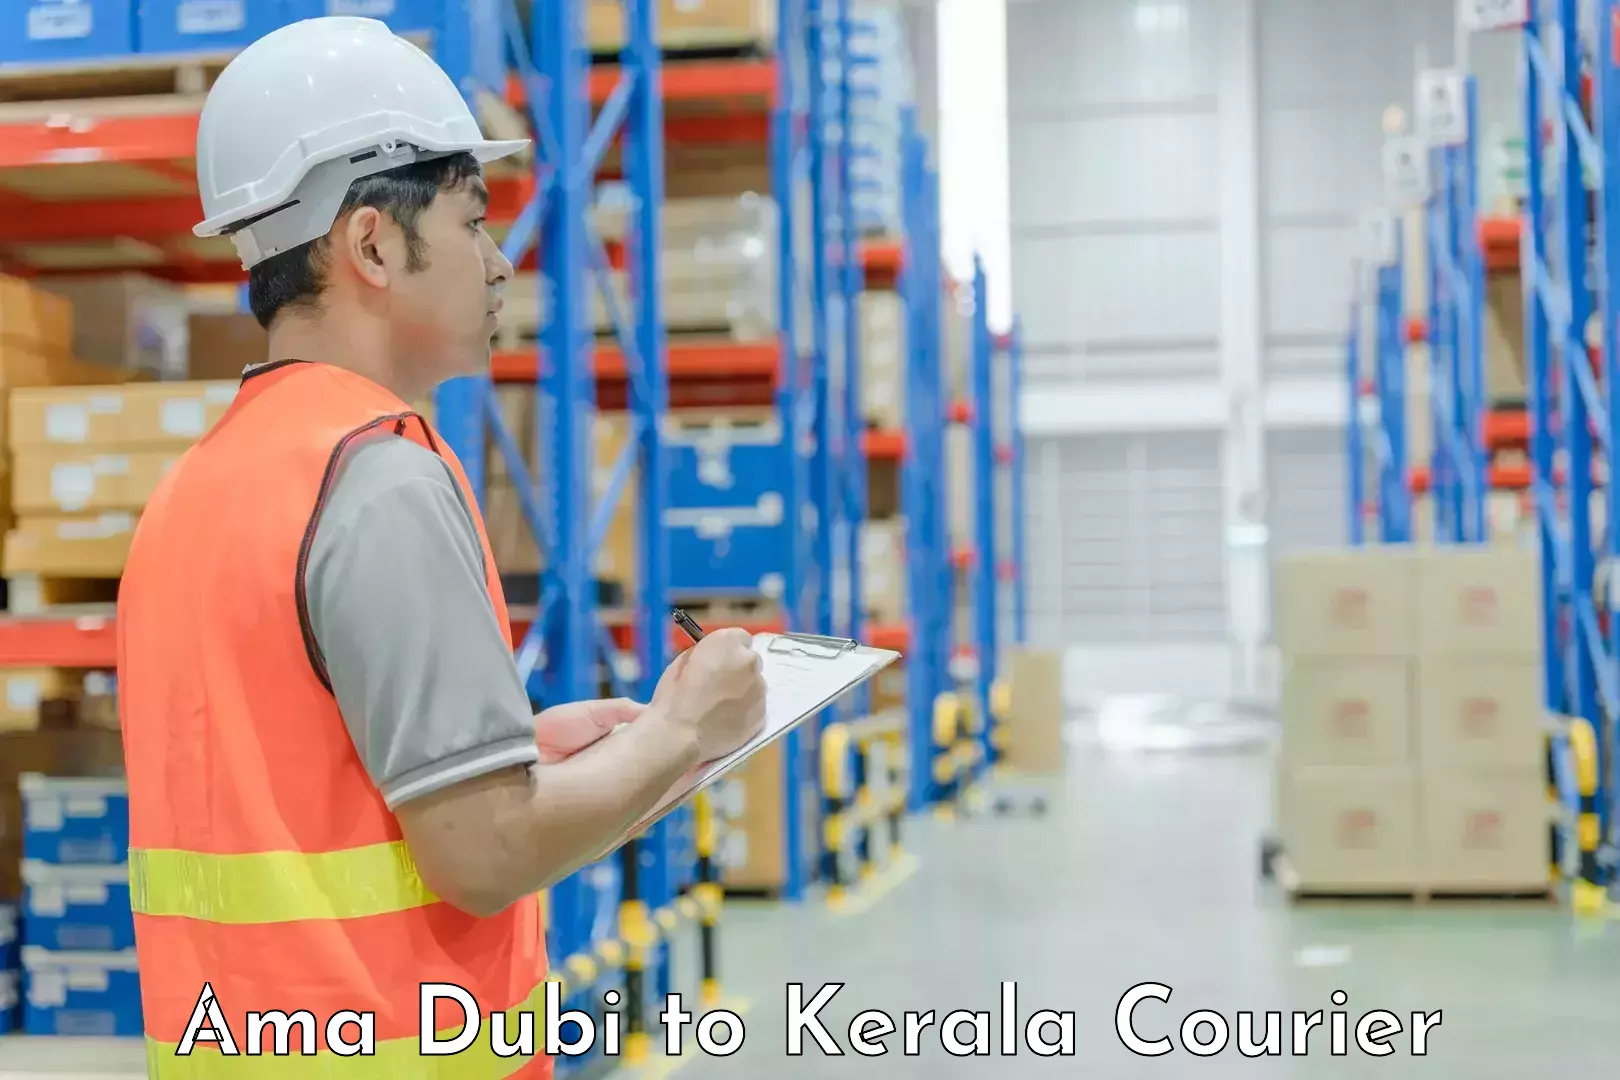 Trusted moving company Ama Dubi to Kerala